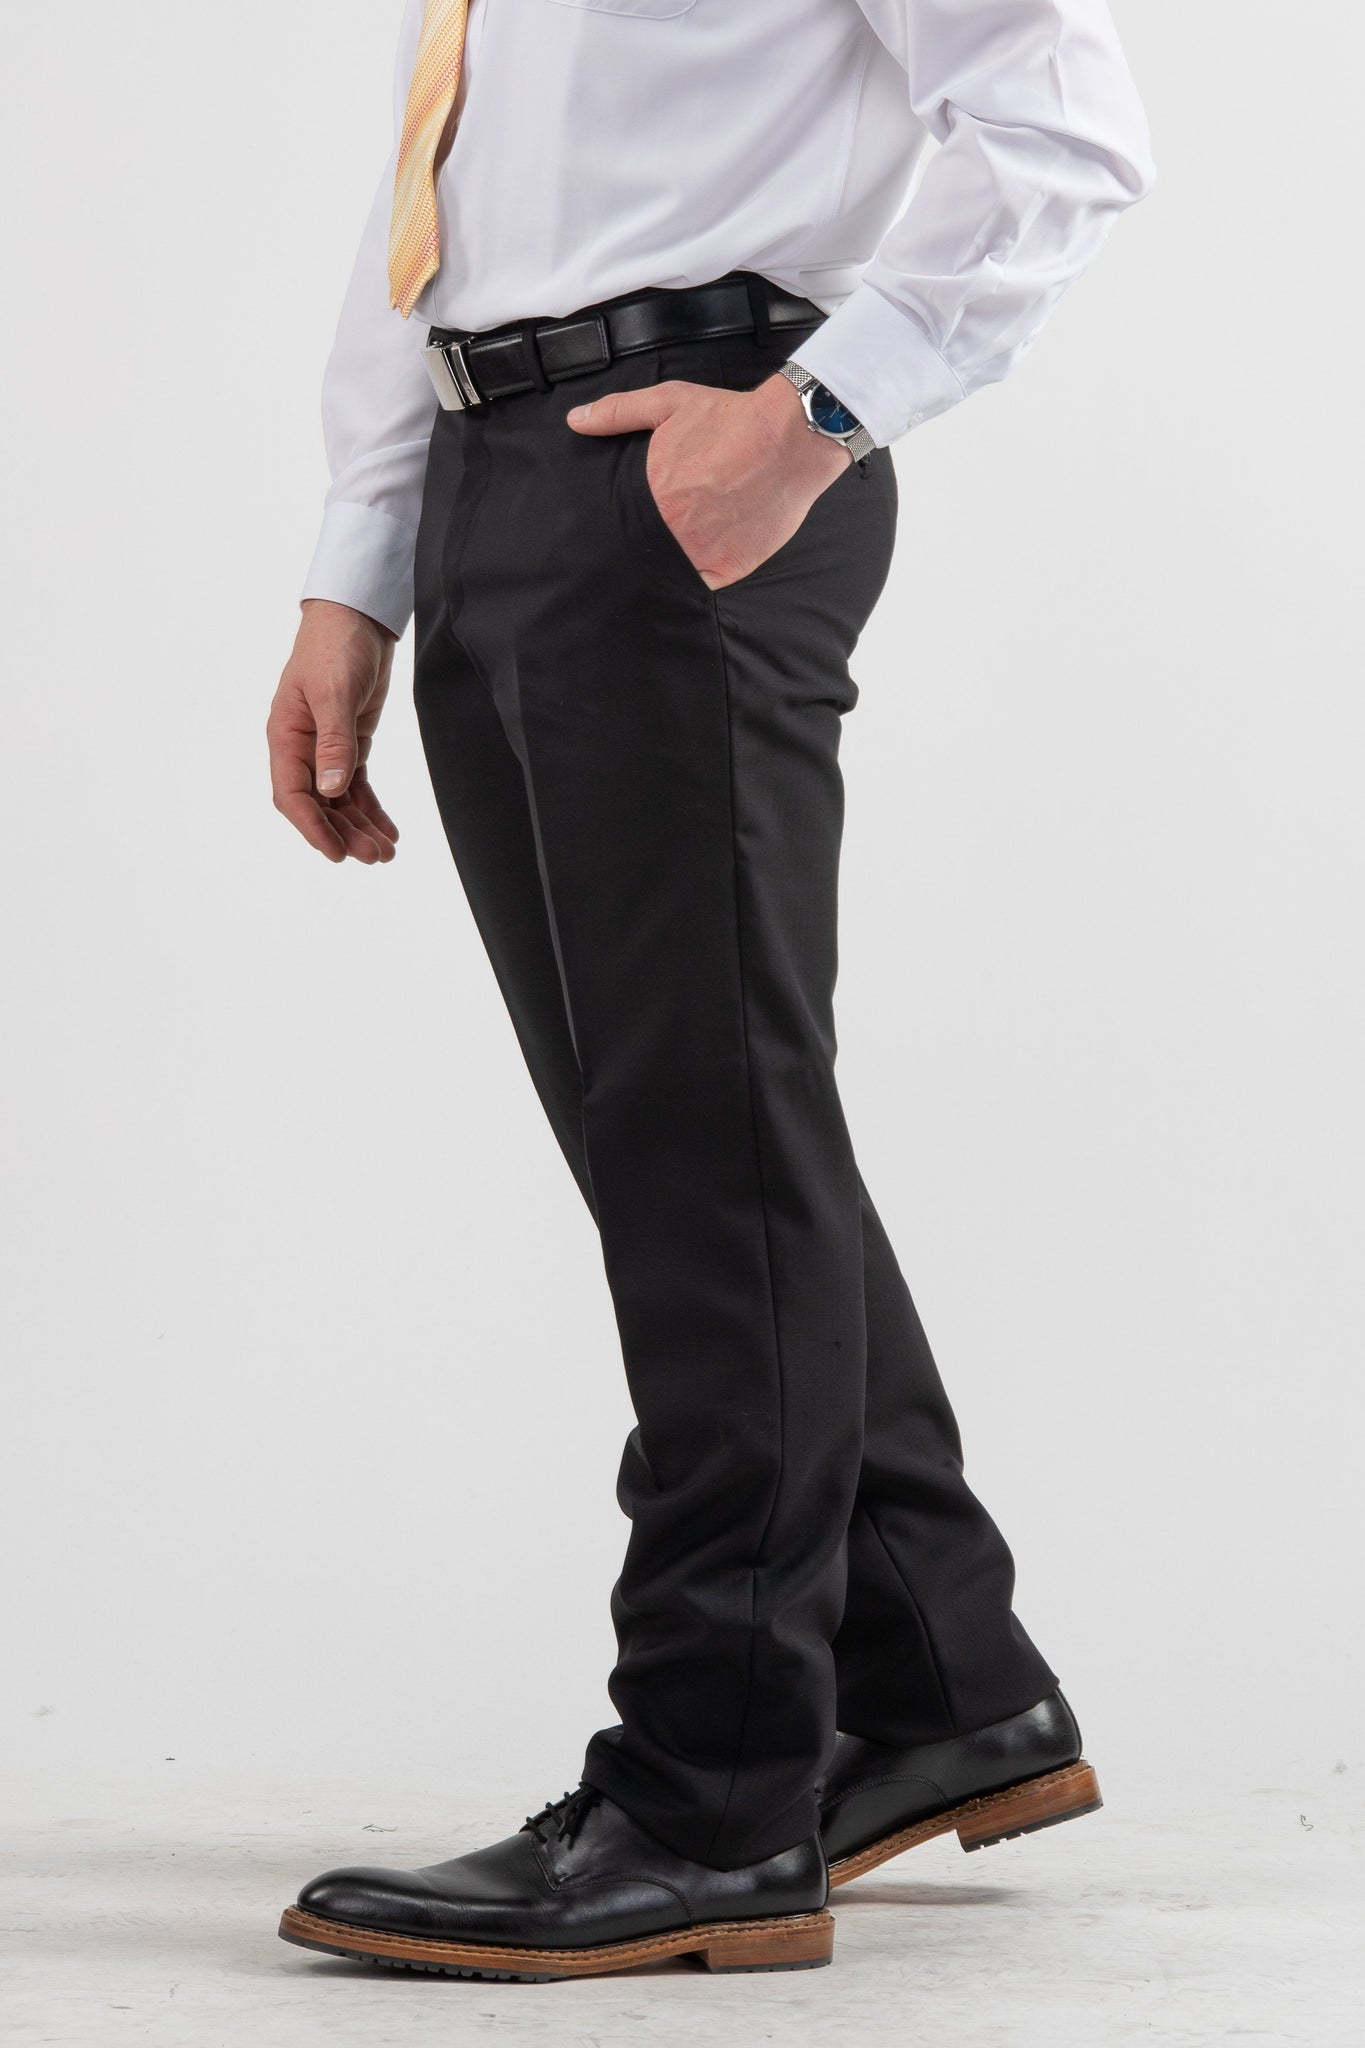 Suits - Wool-Blend Slim-Fit Suit Black Herringbone